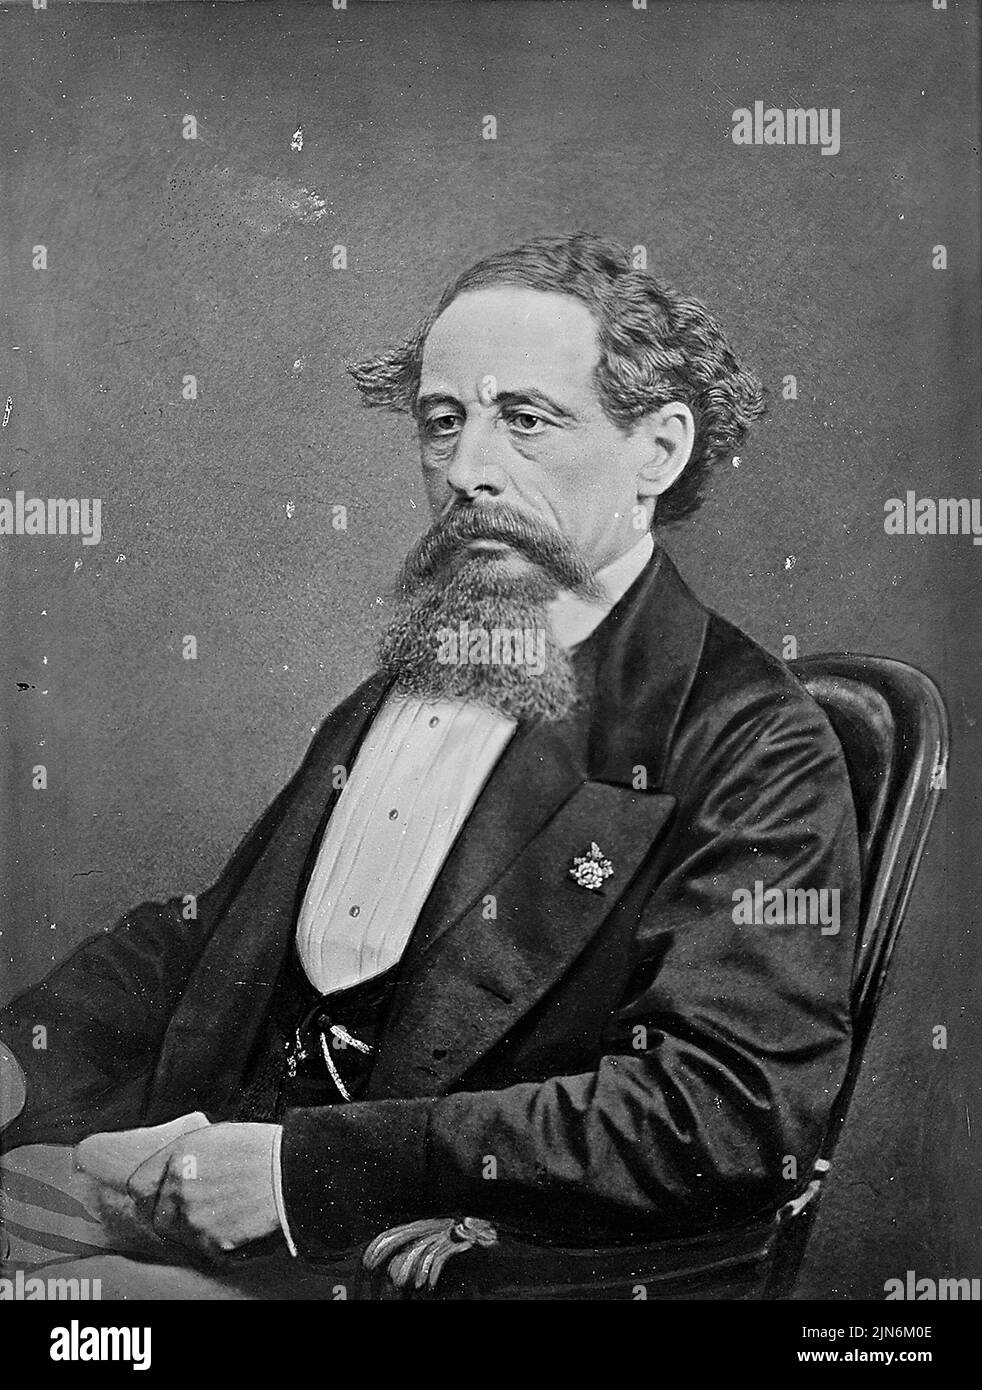 Porträt von Charles Dickens während seines USA-Besuches - Foto: Matthew Brady/Geopix Stockfoto